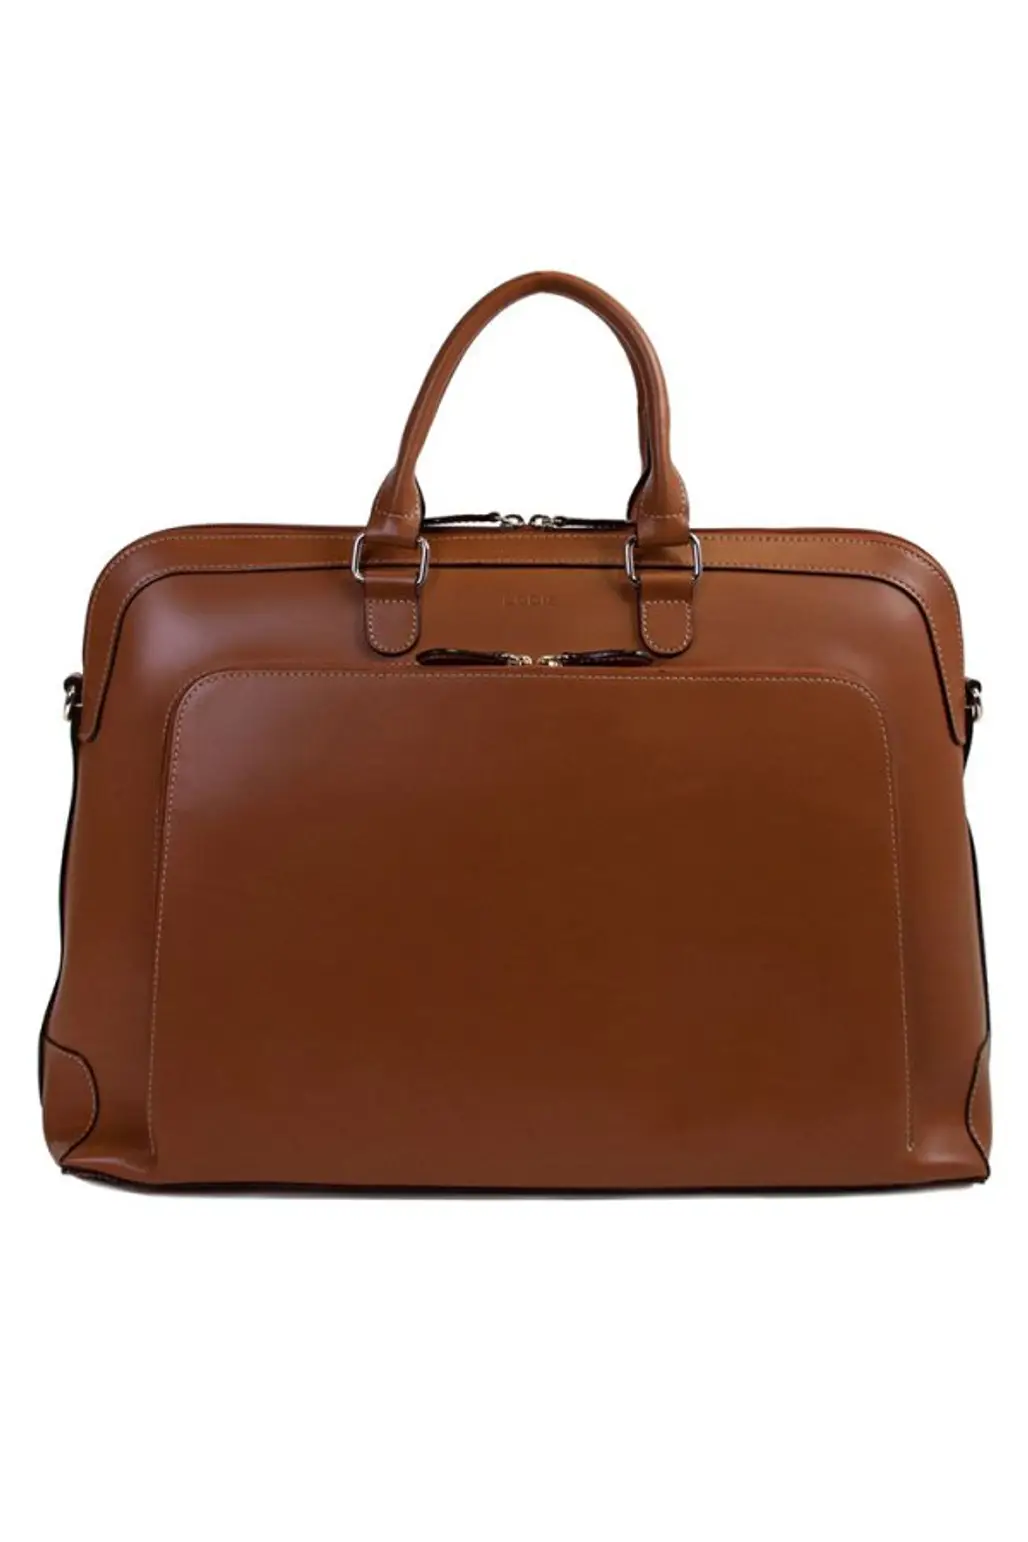 bag, brown, briefcase, shoulder bag, handbag,